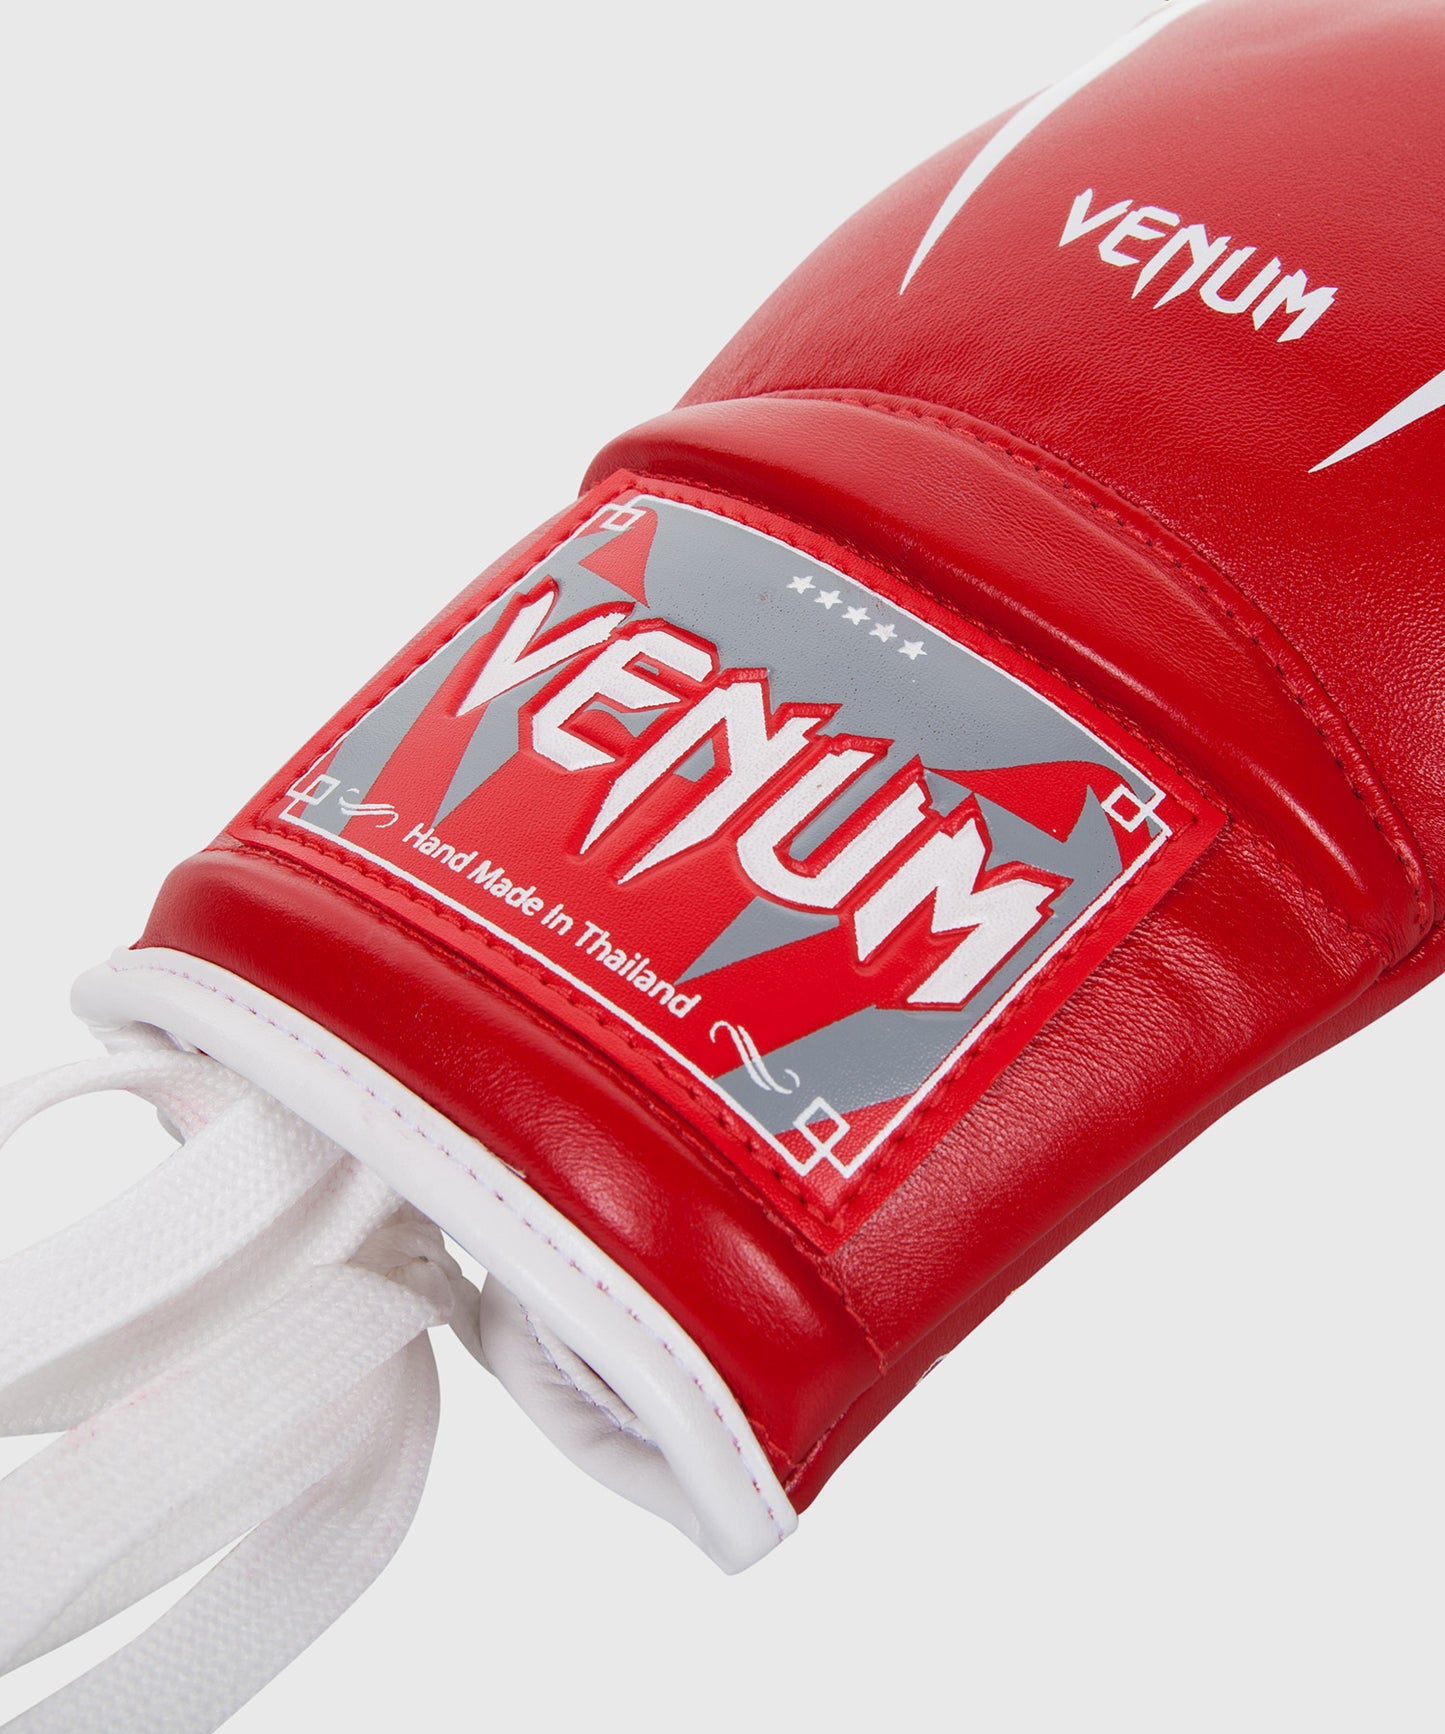 Venum Giant 3.0 Bokshandschoenen - nappaleer - met veters - Rood